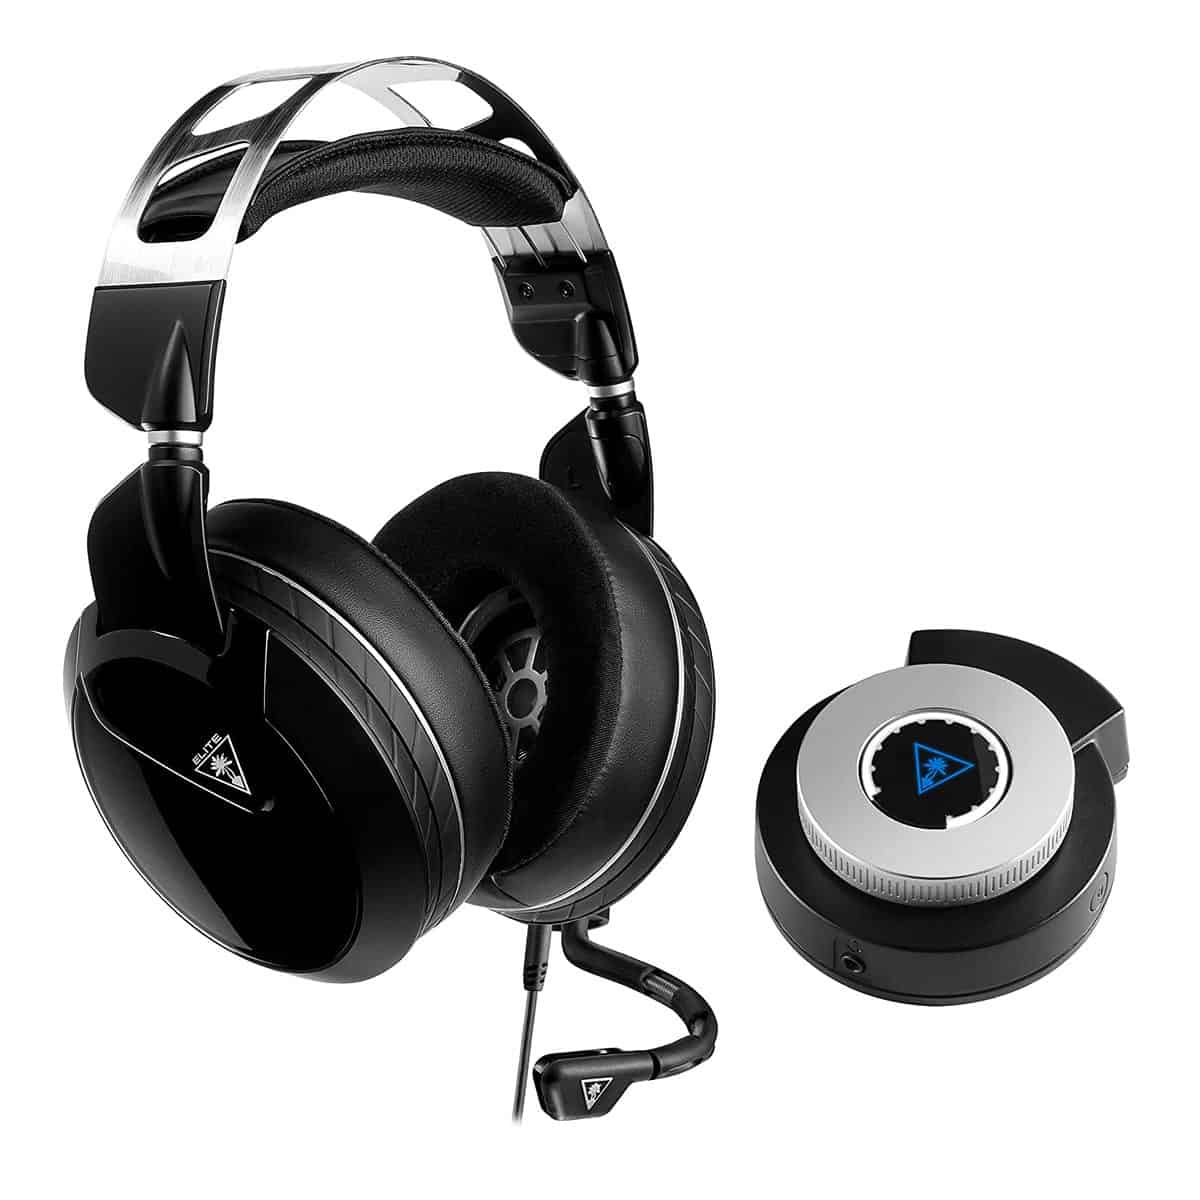 Turtle Beach Elite Pro 2 Gaming Headset and SuperAmp - für 99,99 € inkl. Versand statt 139,99 €